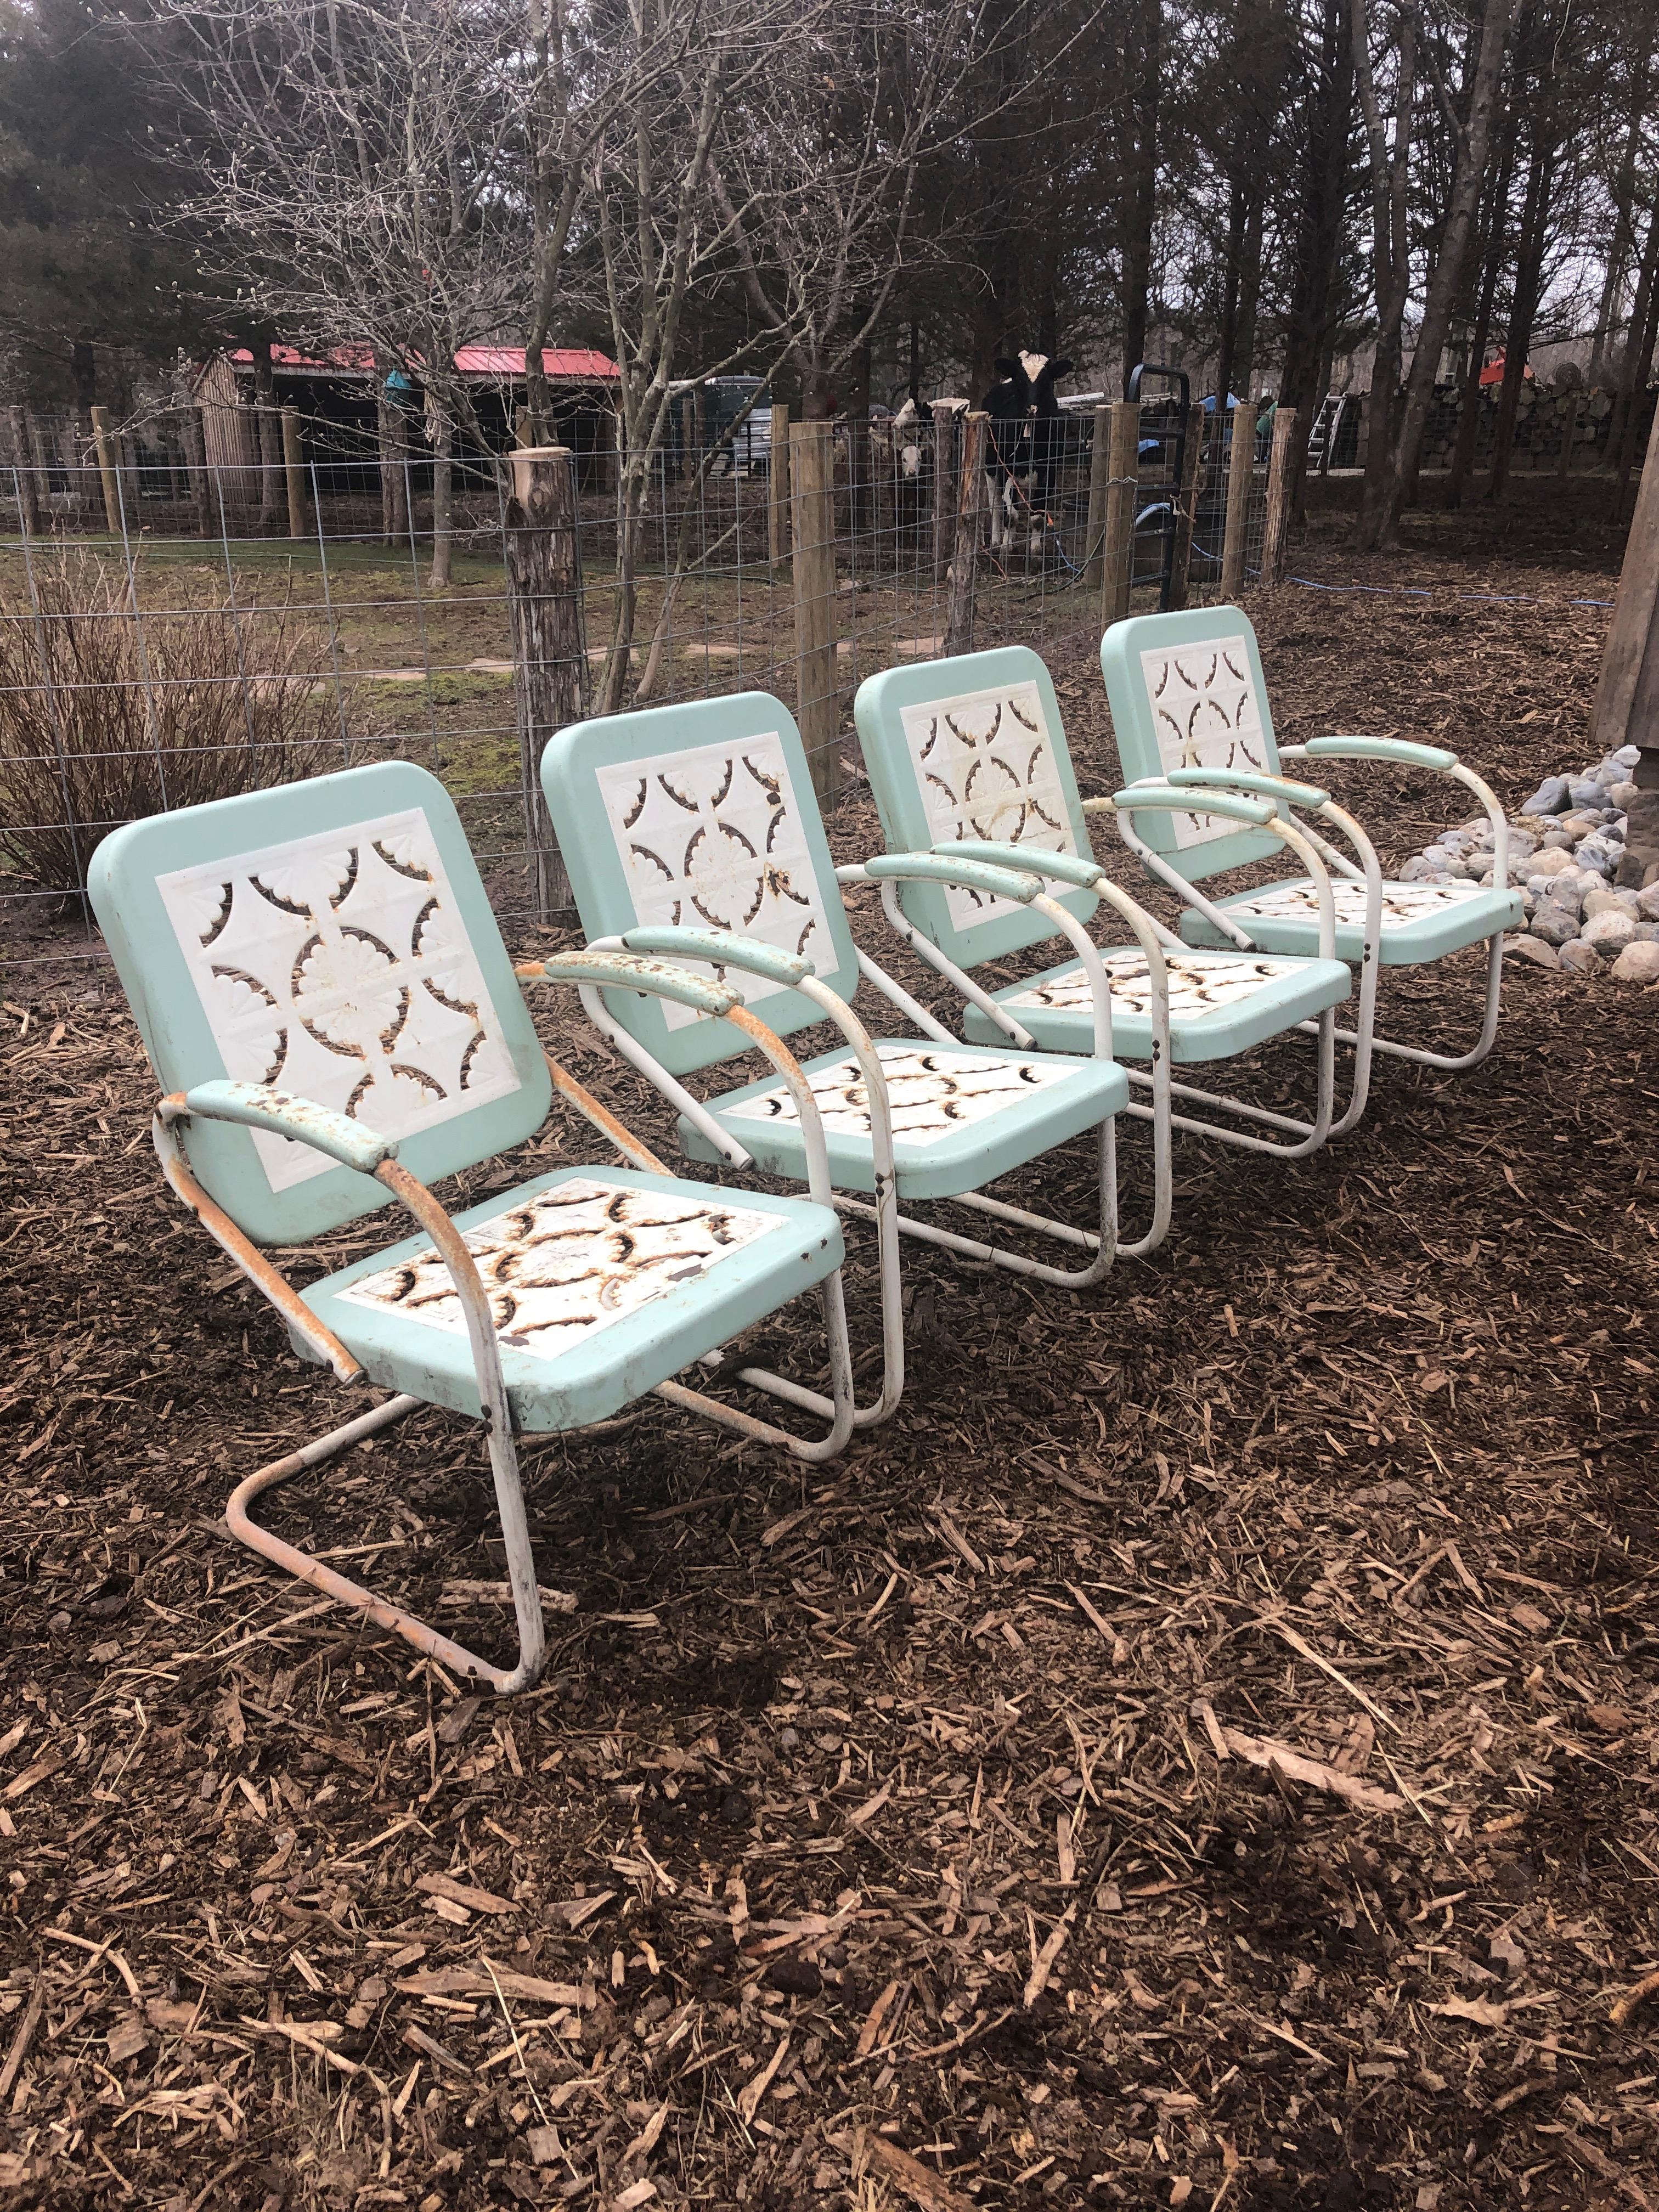 Un ensemble invitant de quatre fauteuils de jardin classiques en métal de style rustique, avec des motifs charmants découpés sur les sièges et les dossiers. La couleur est blanche avec un léger turquoise.
Mesures : Hauteur des bras 24.5.